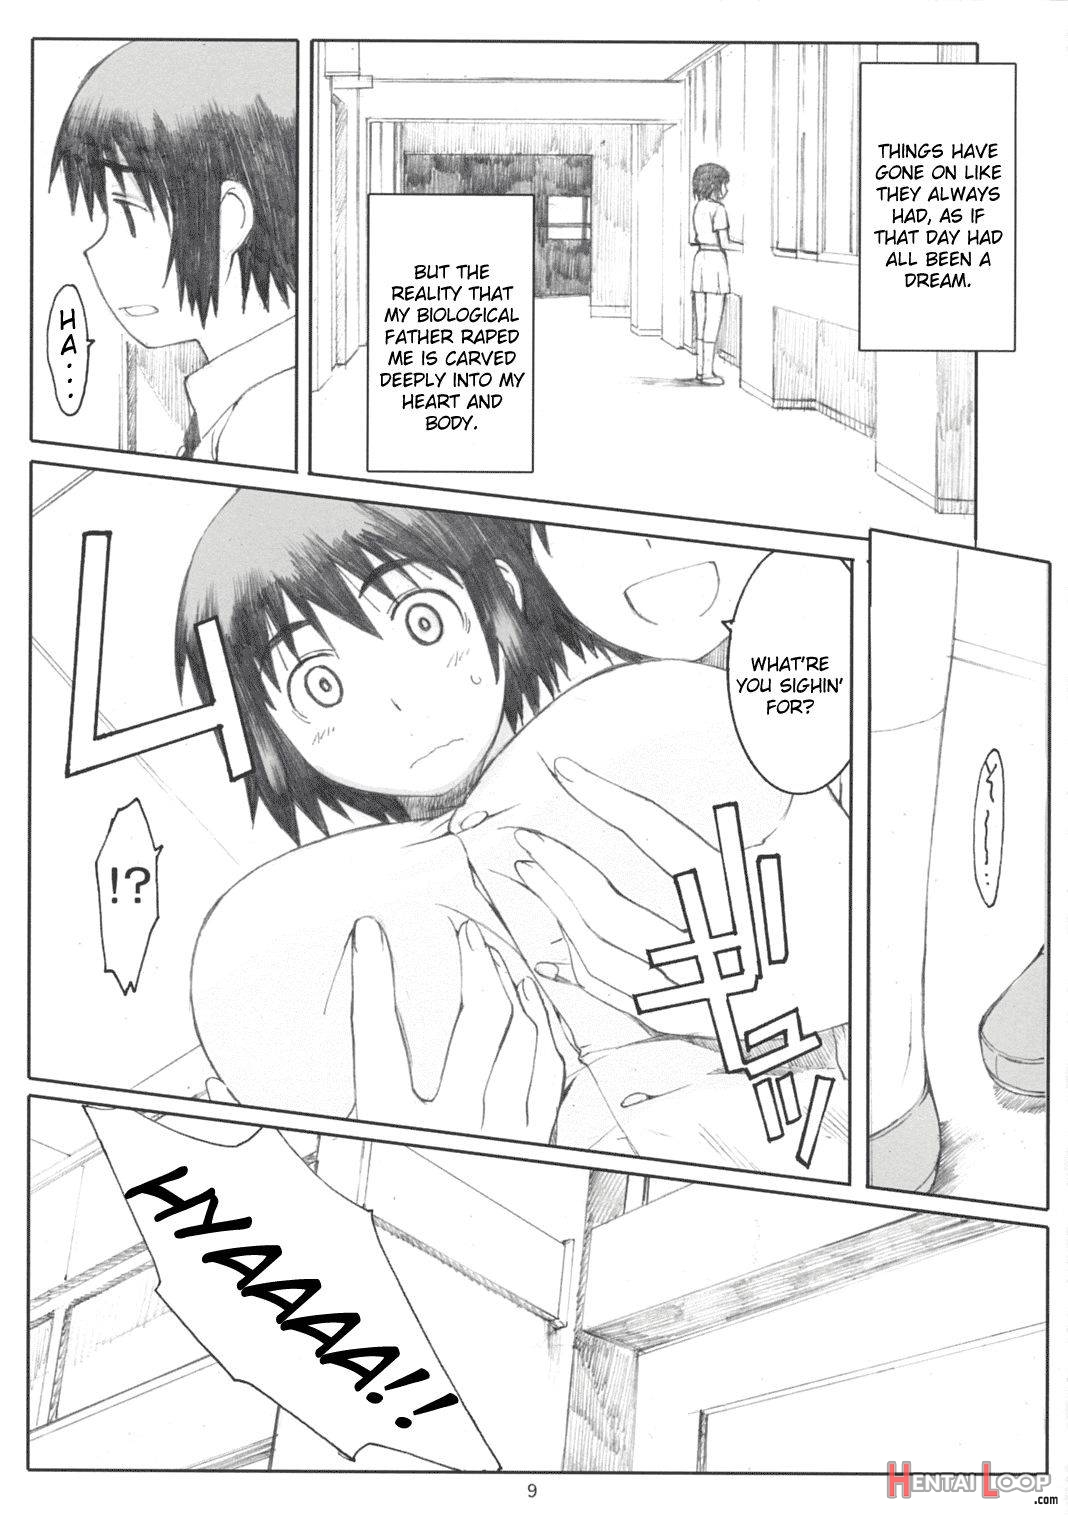 Natsukaze! 2 page 8